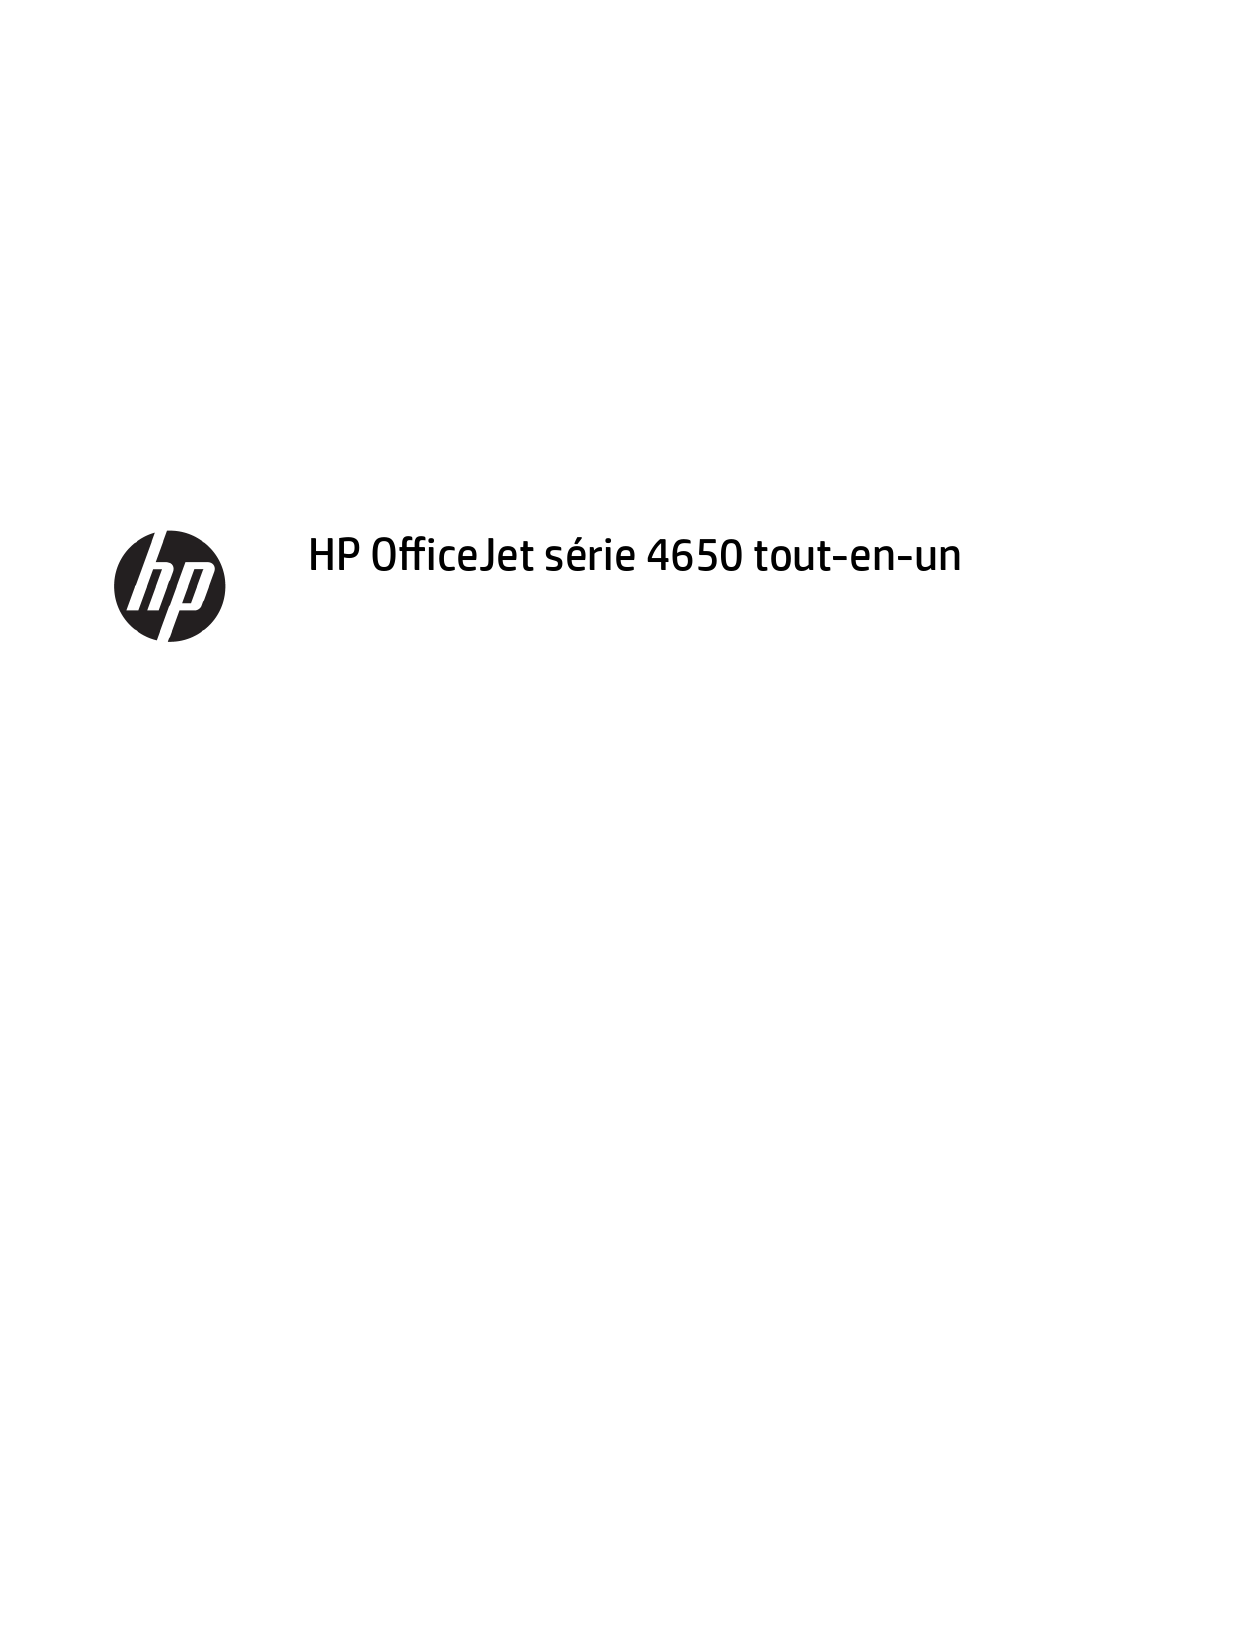 Mode d'emploi HP OFFICEJET 4650